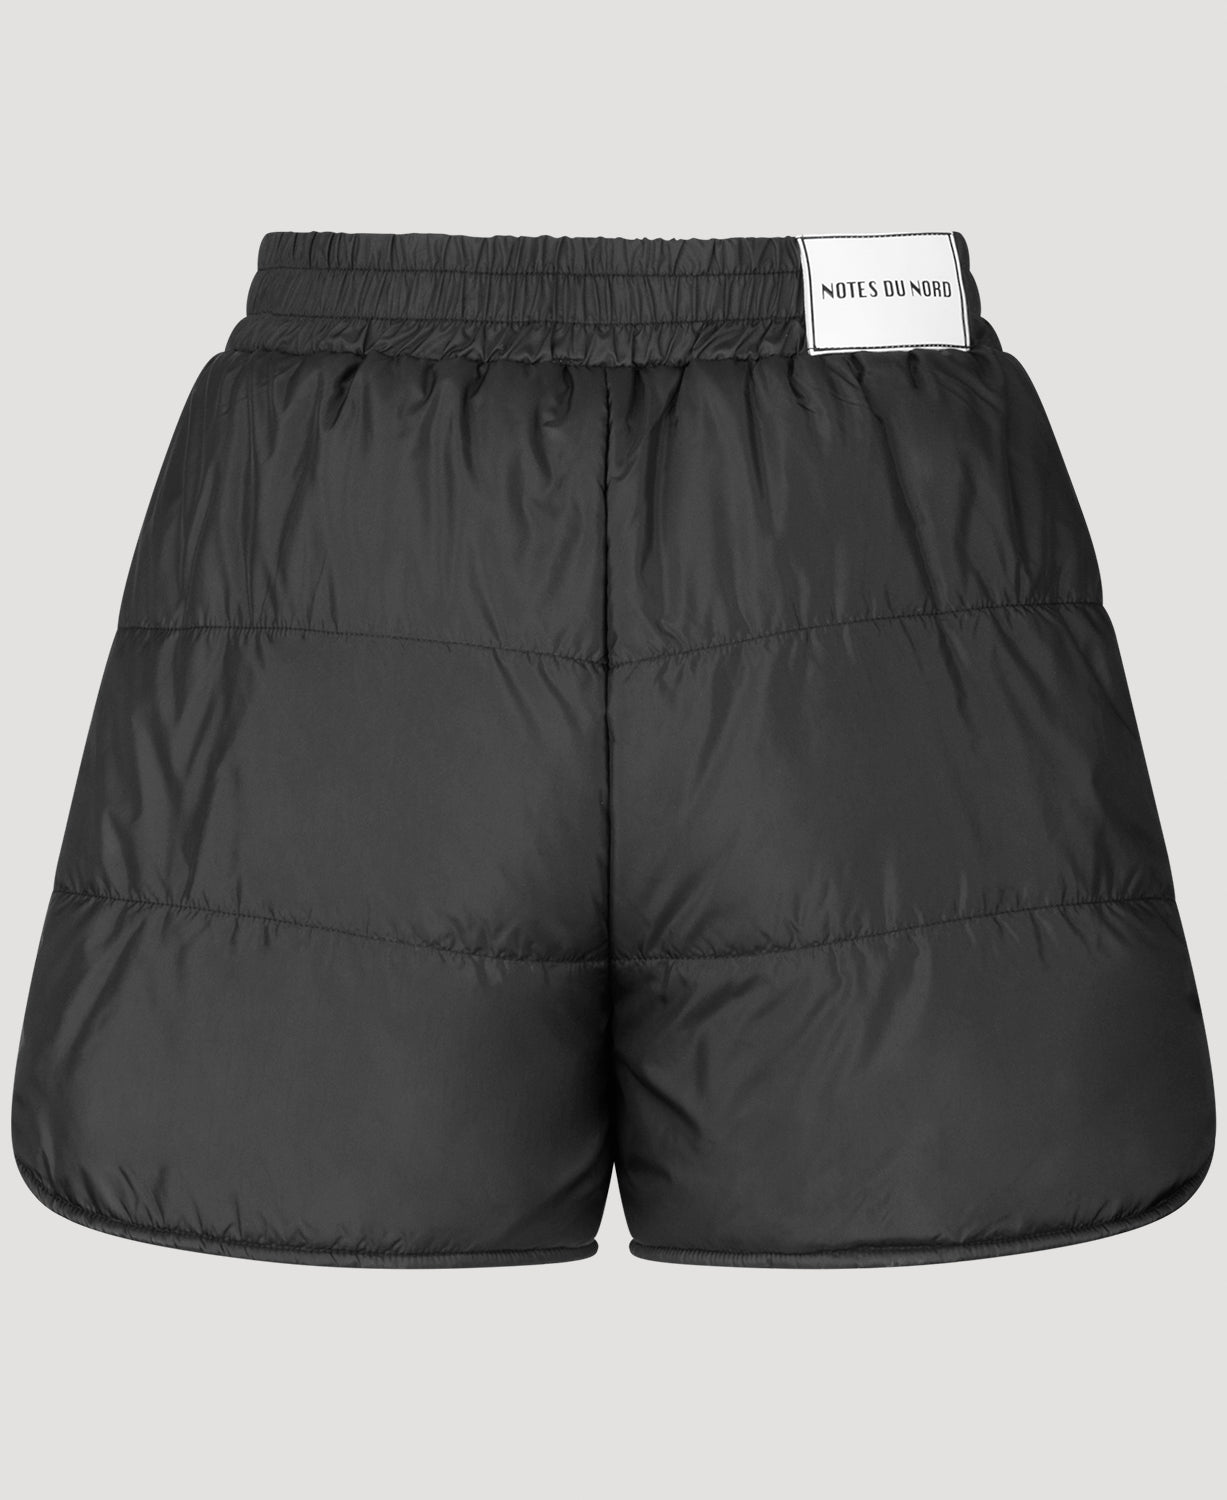 Notes du Nord Emilia Recycled Shorts Shorts 902 Noir